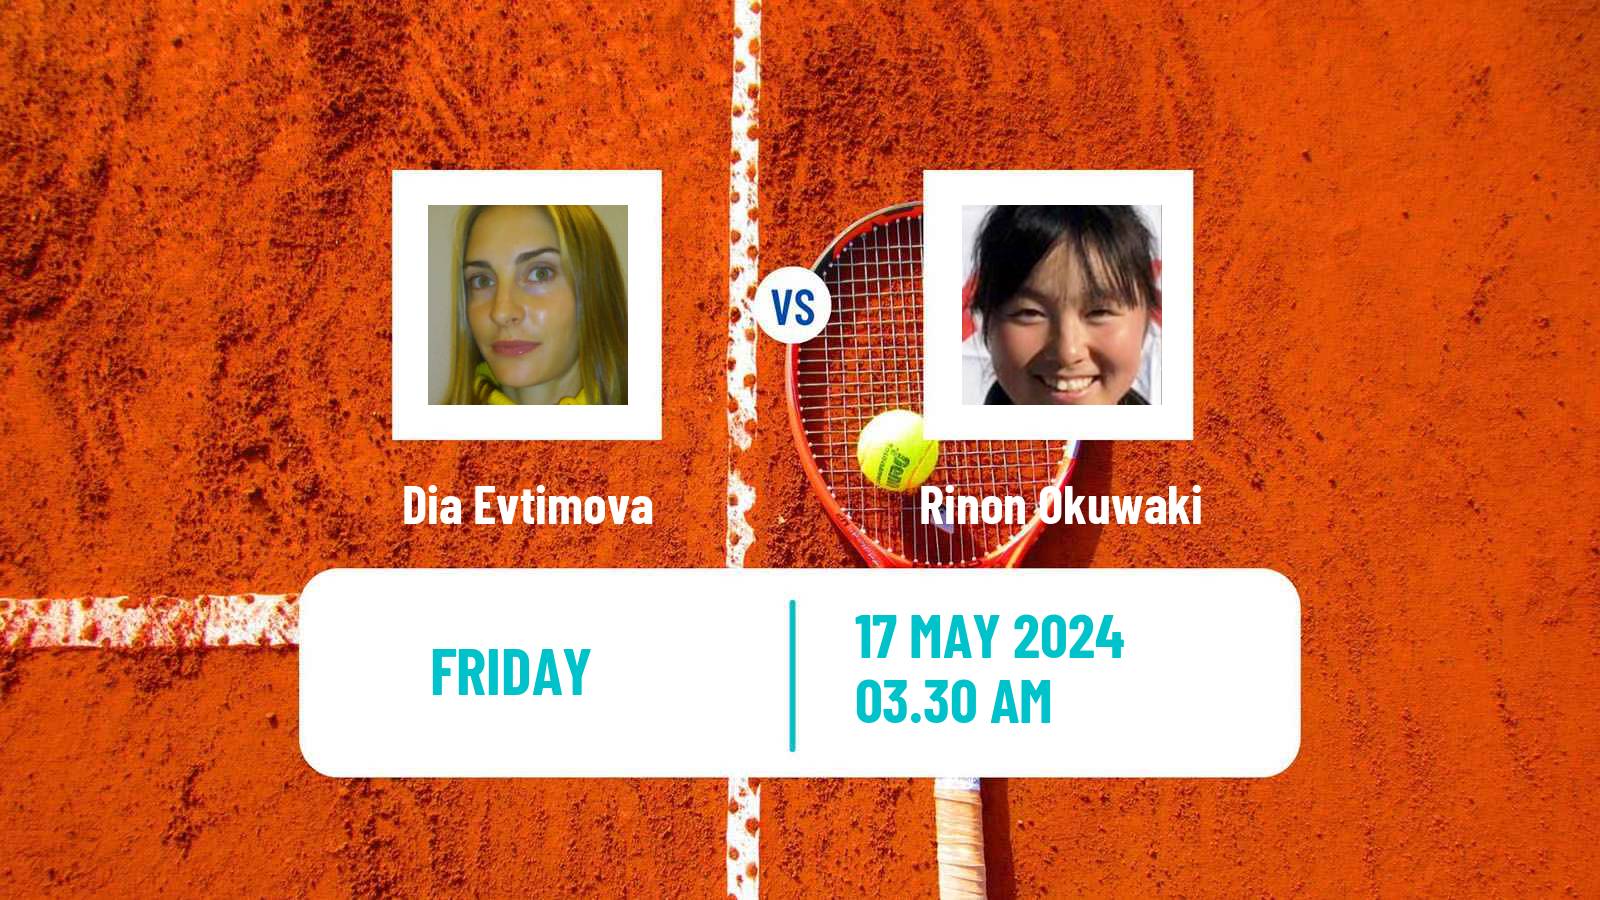 Tennis ITF W15 Antalya 14 Women Dia Evtimova - Rinon Okuwaki